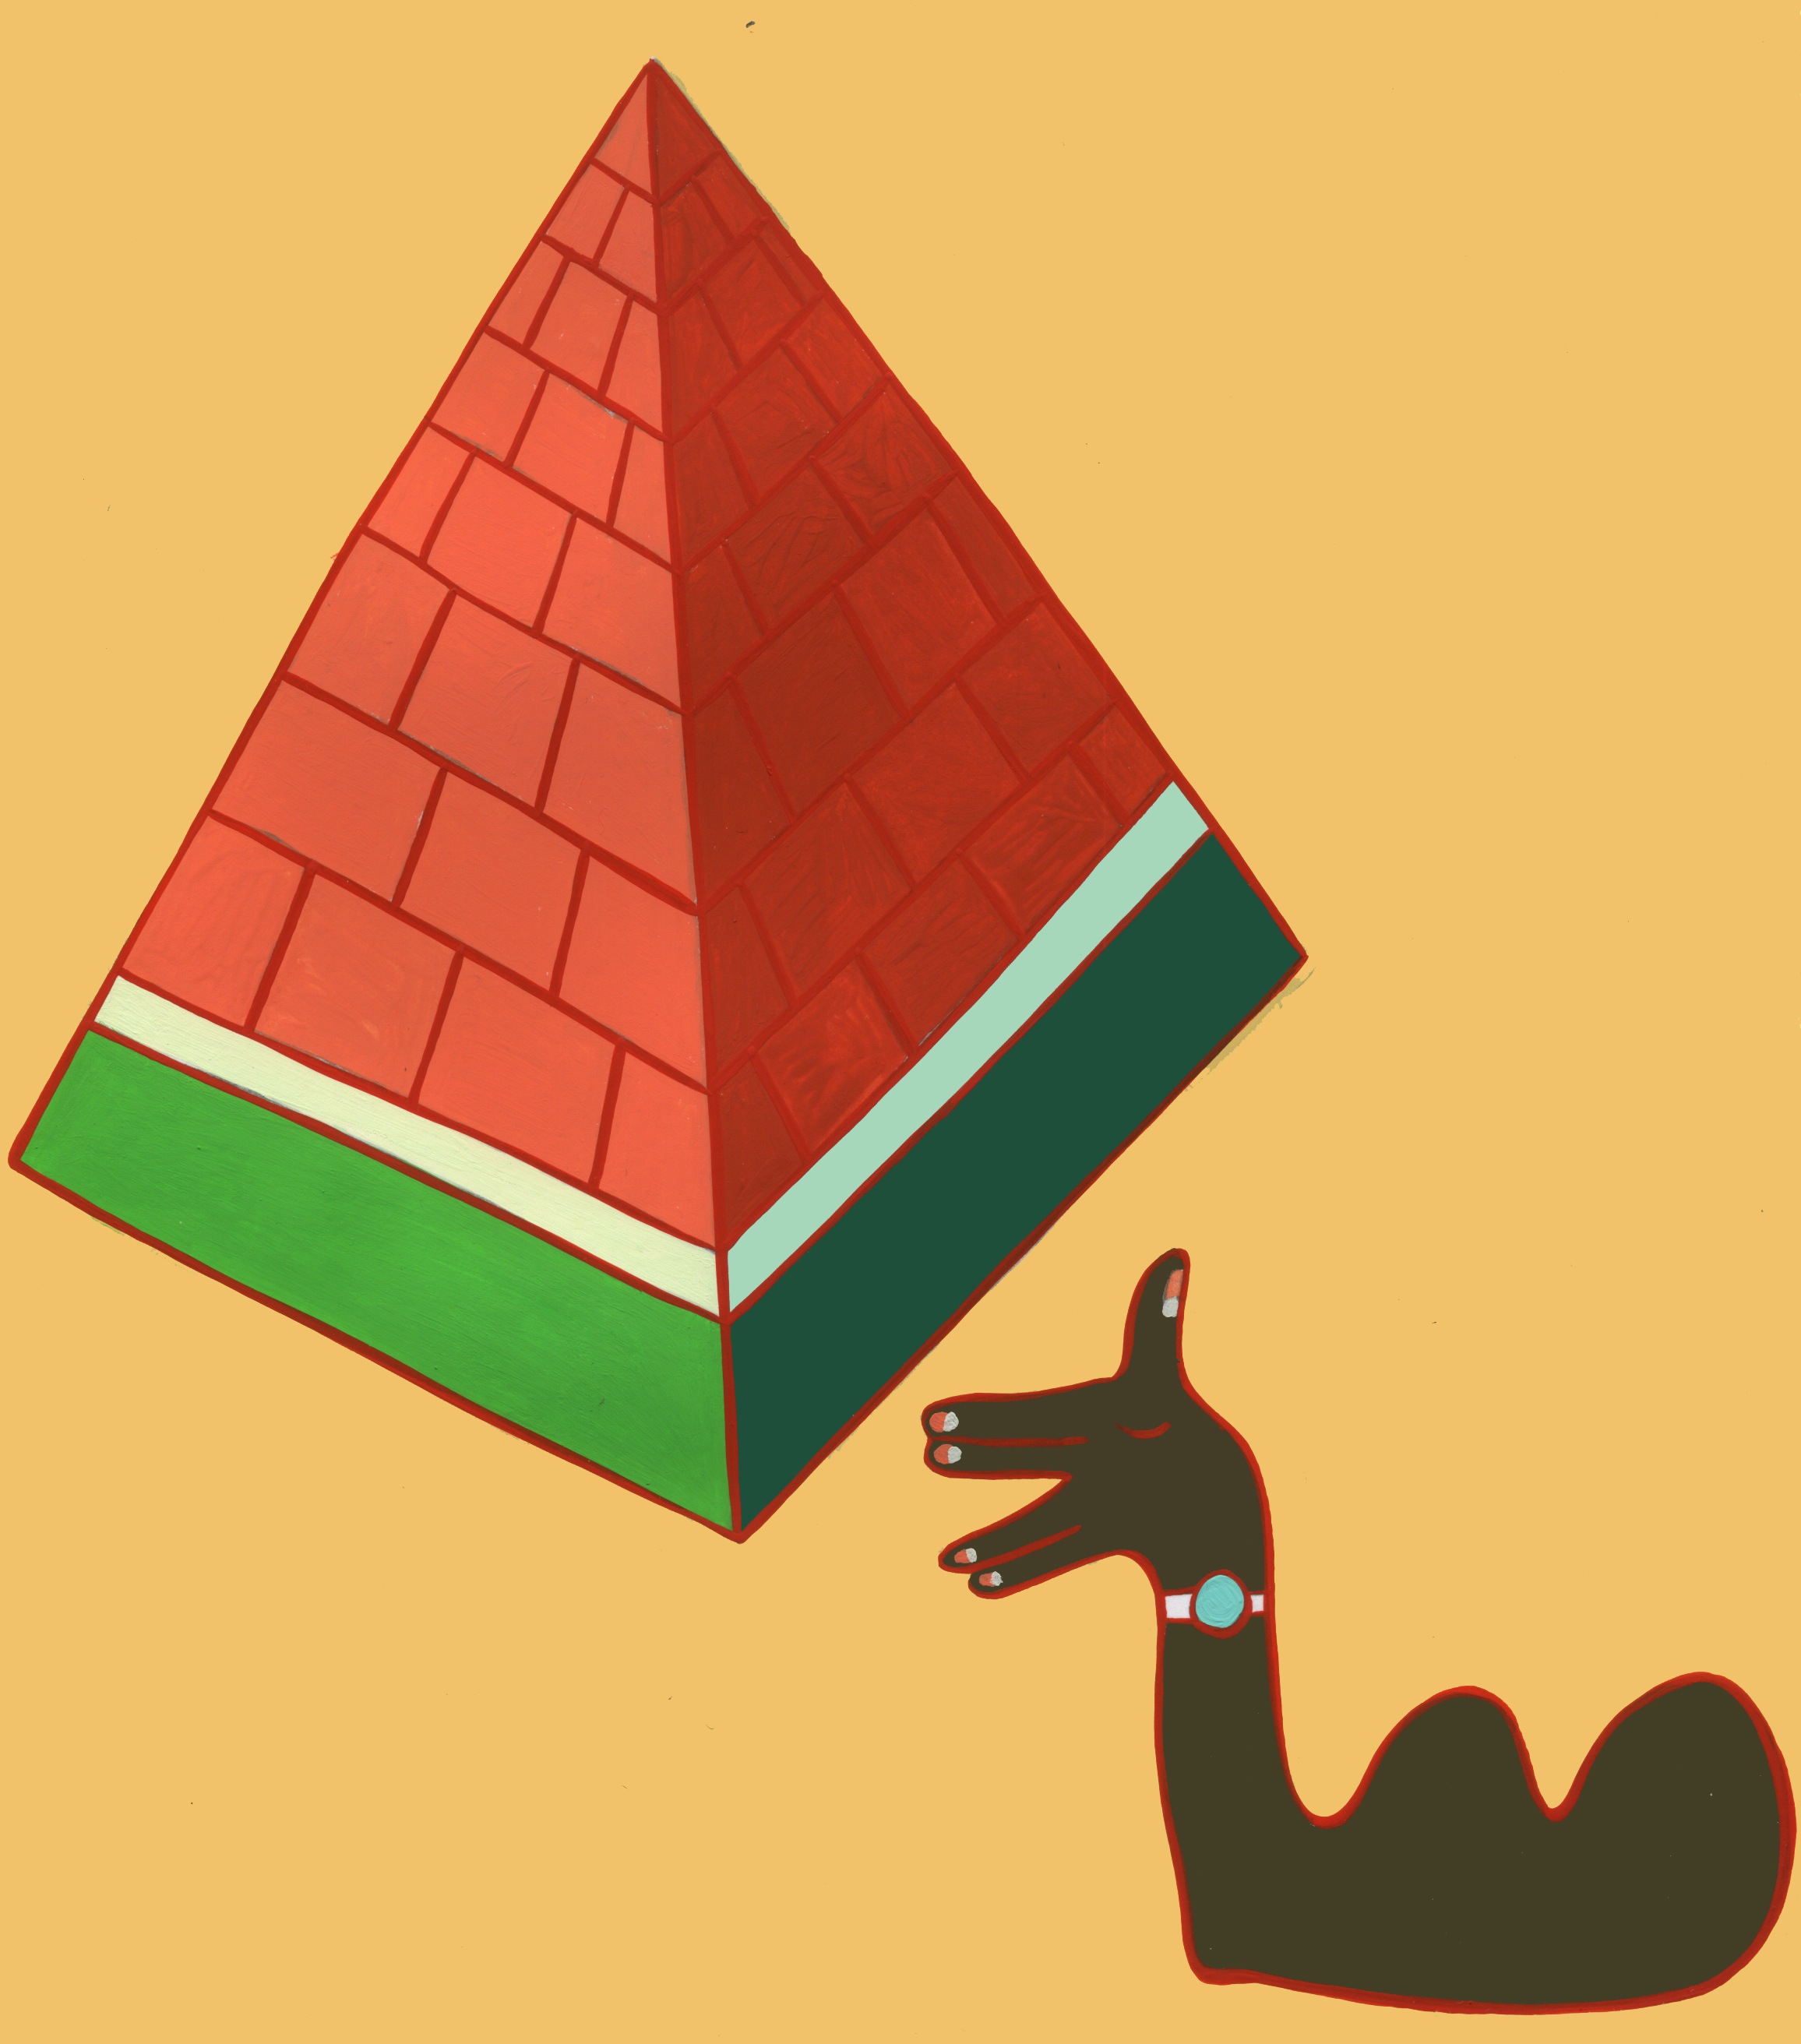 60_watermelonpyramid.jpeg